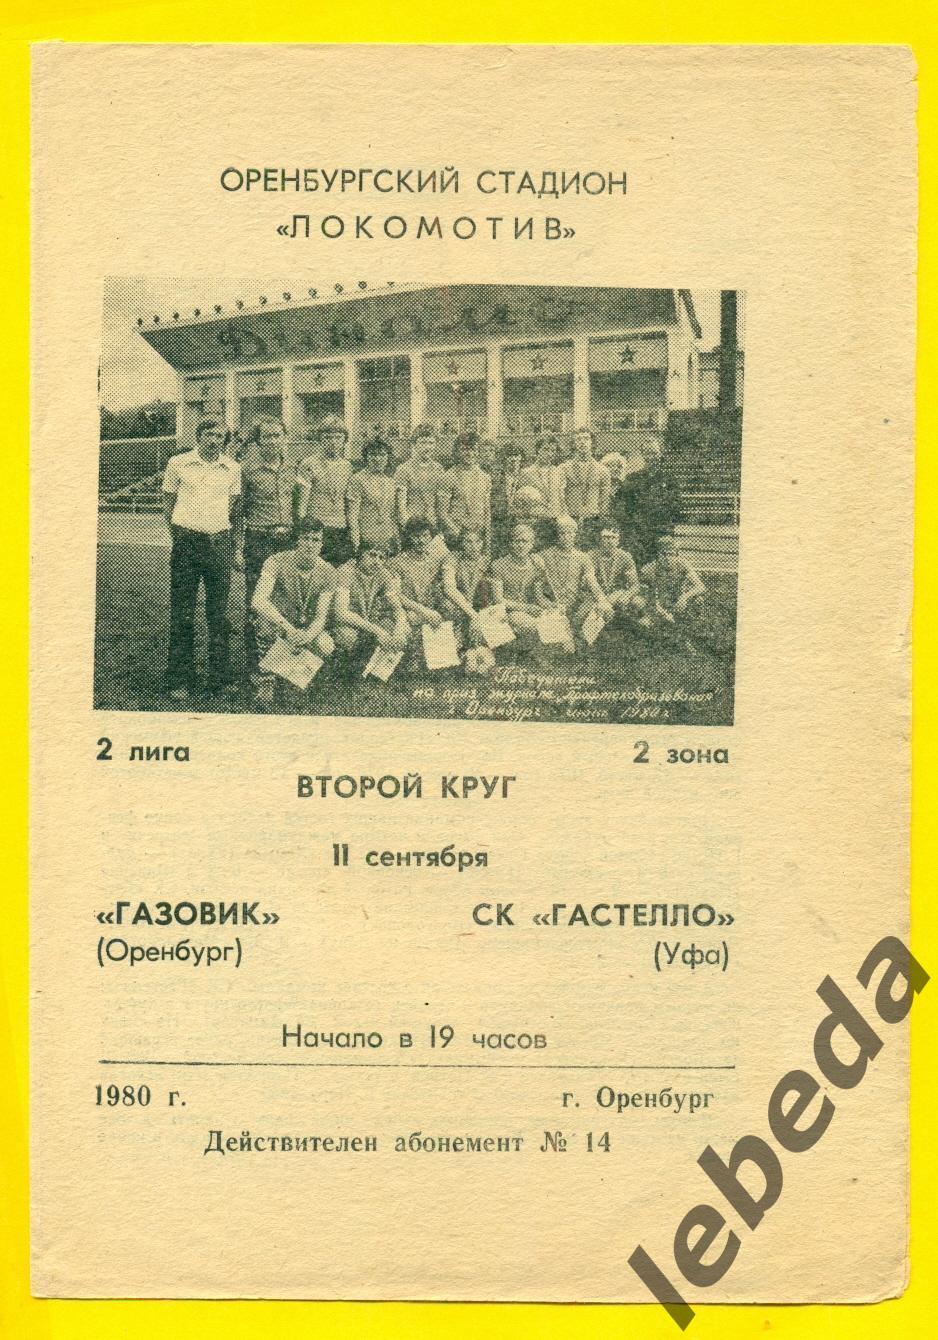 Газовик Оренбург - Гастелло Уфа - 1980 г.(11.09.80.)